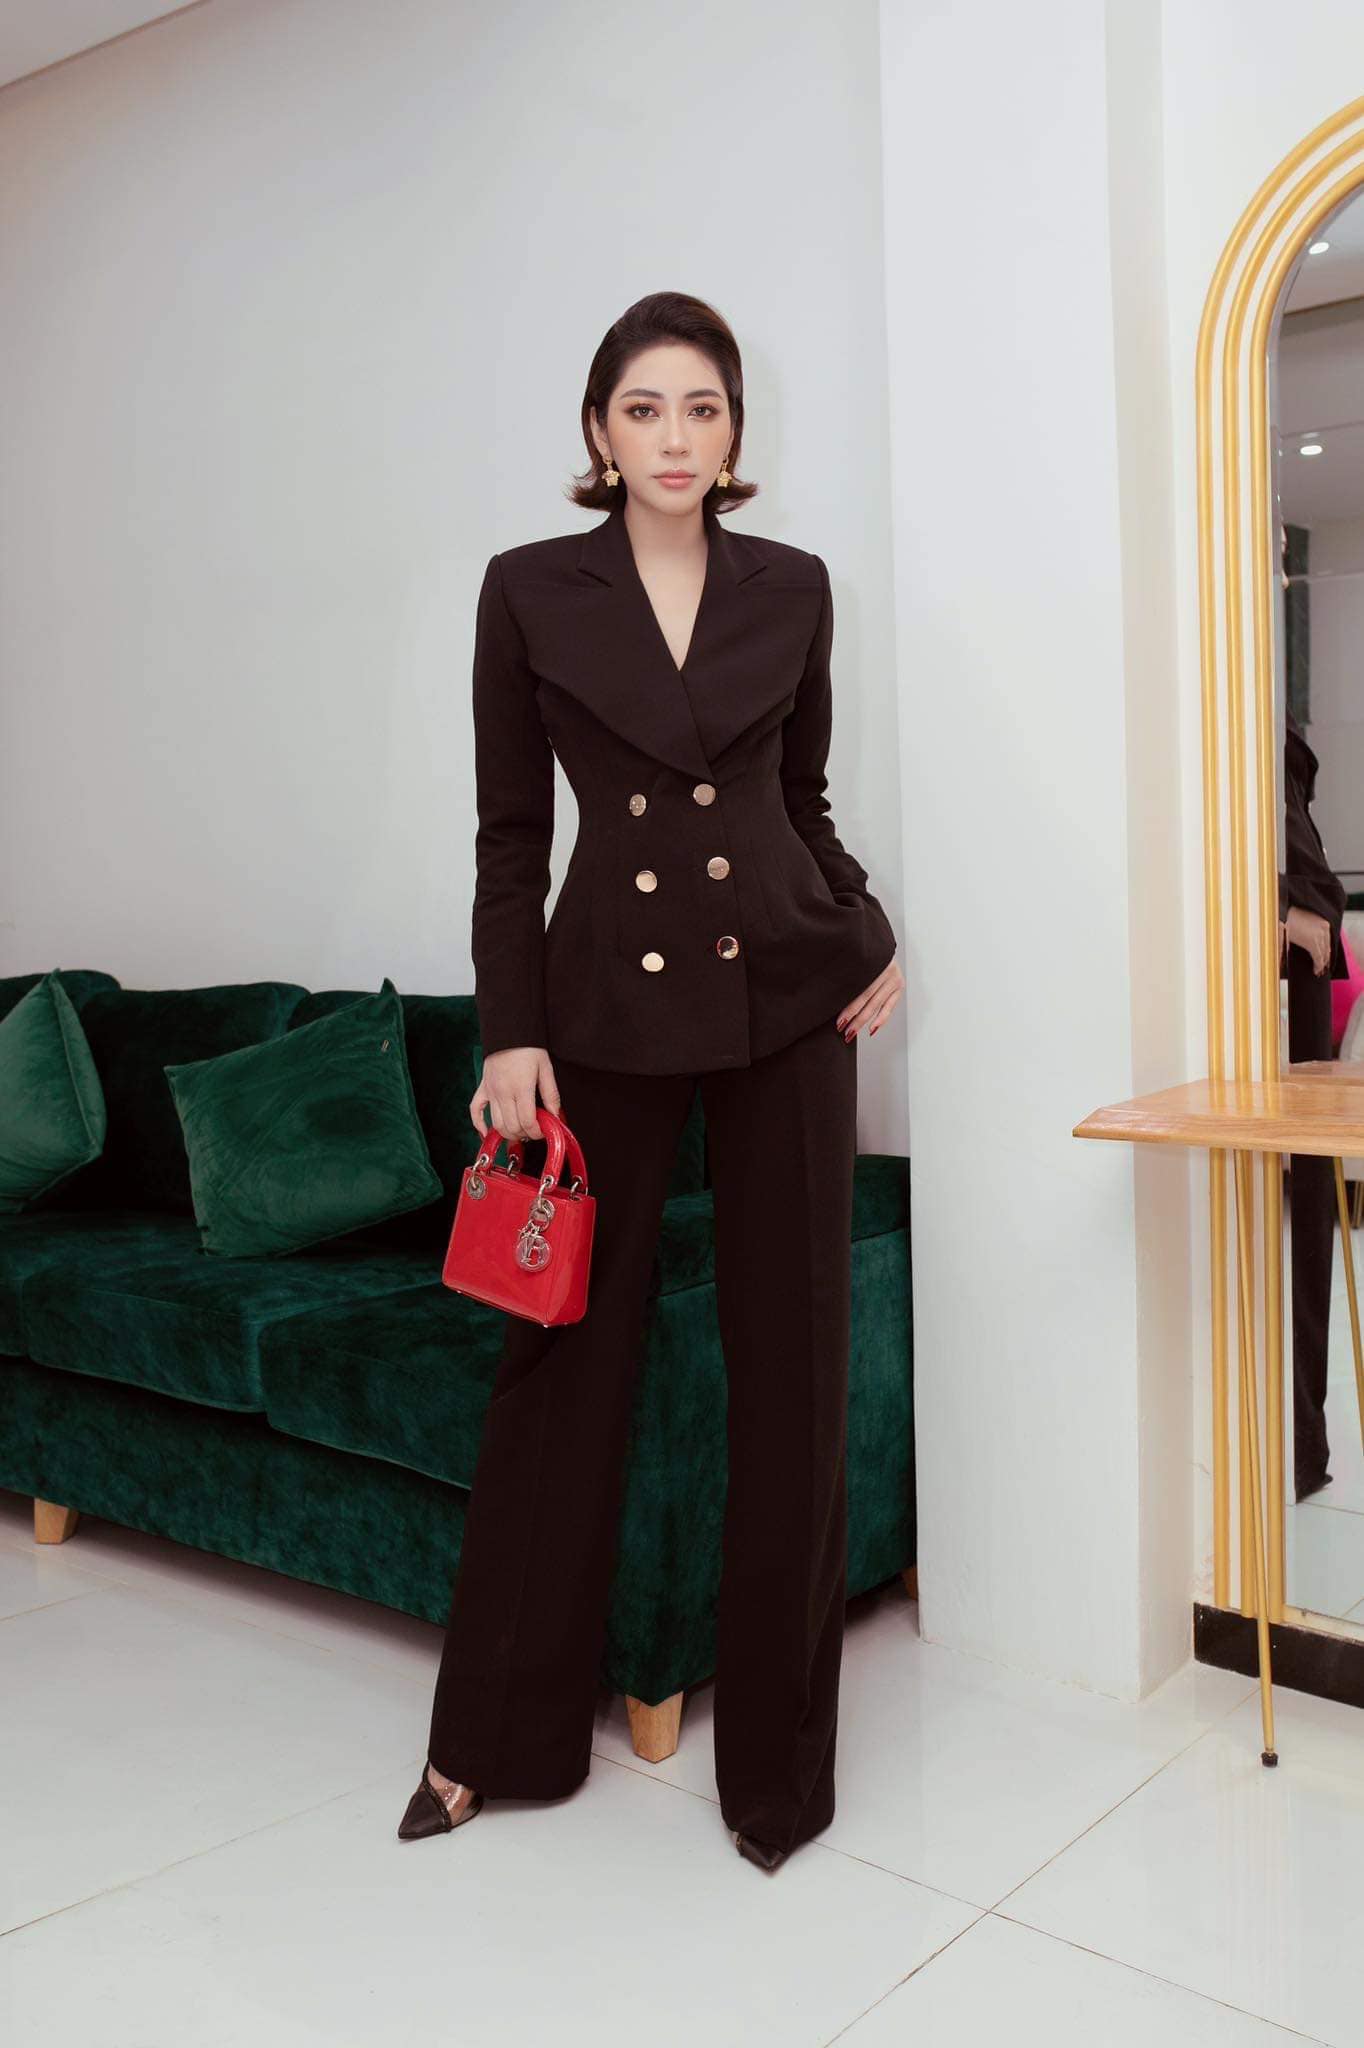 Người đẹp lựa chọn những trang phục thanh lịch sang trọng như bộ suit đen cùng phụ kiện là chiếc túi Dior đắt đỏ.